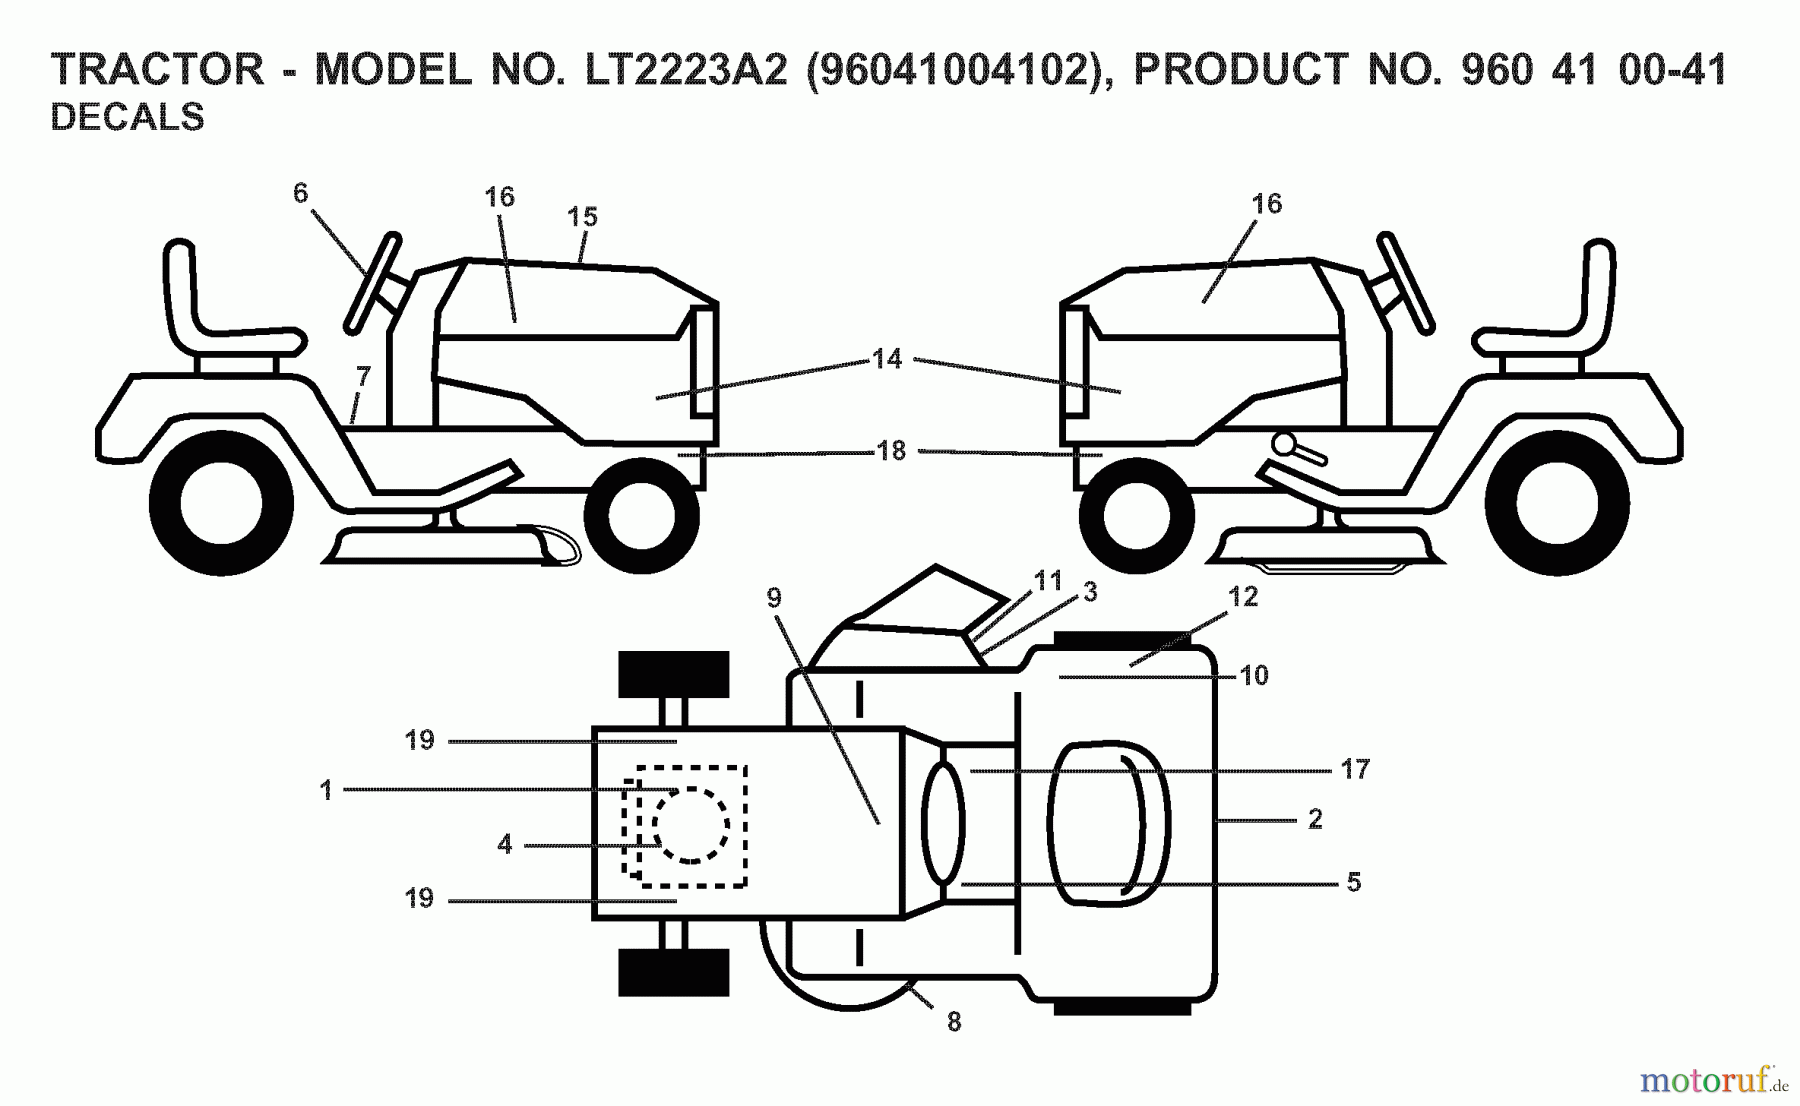  Jonsered Rasen  und Garten Traktoren LT2223 A2 (96041004102) - Jonsered Lawn & Garden Tractor (2008-01) DECALS